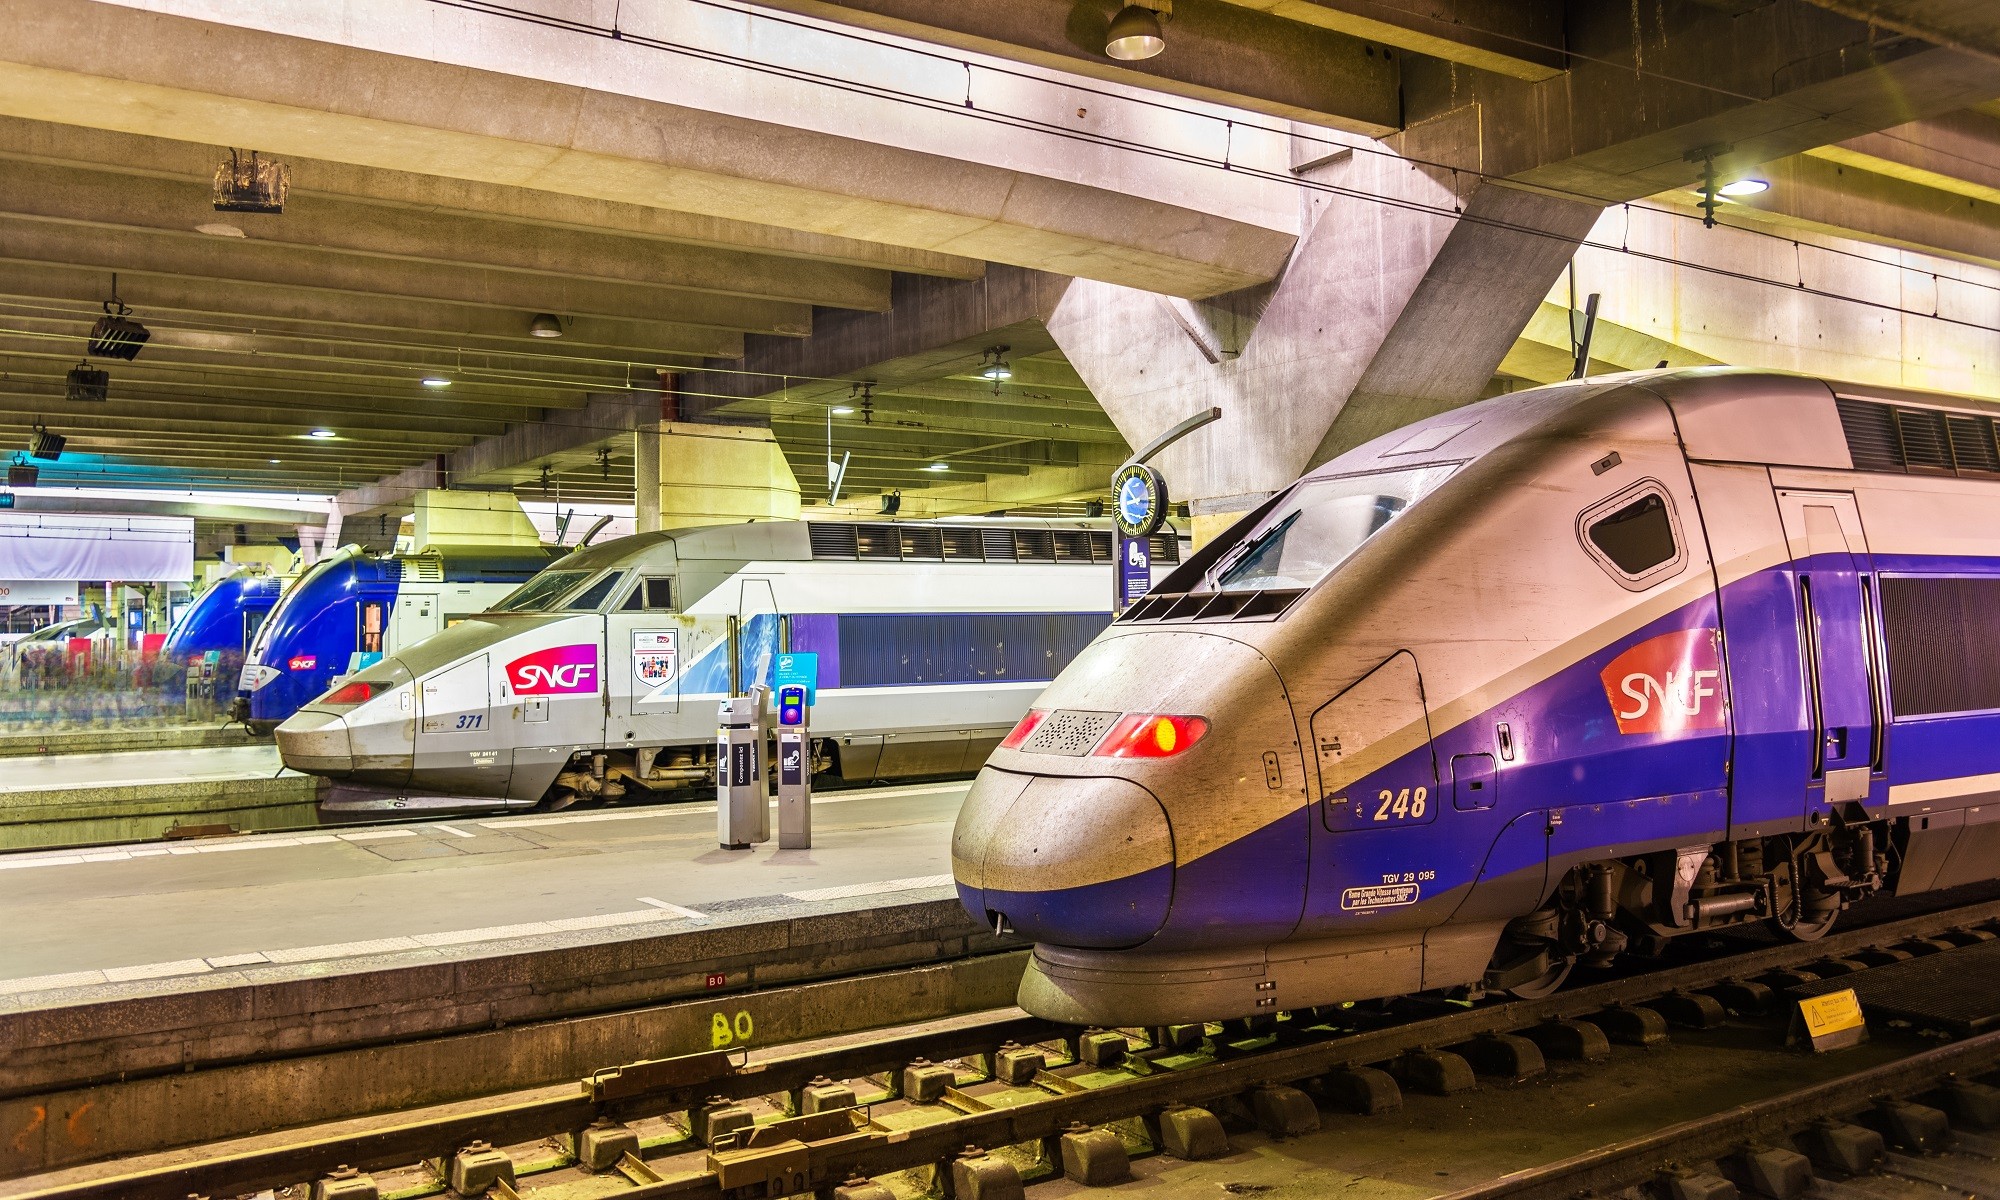 L'offre Train+Air permet désormais de voyager avec des billets digitalisés